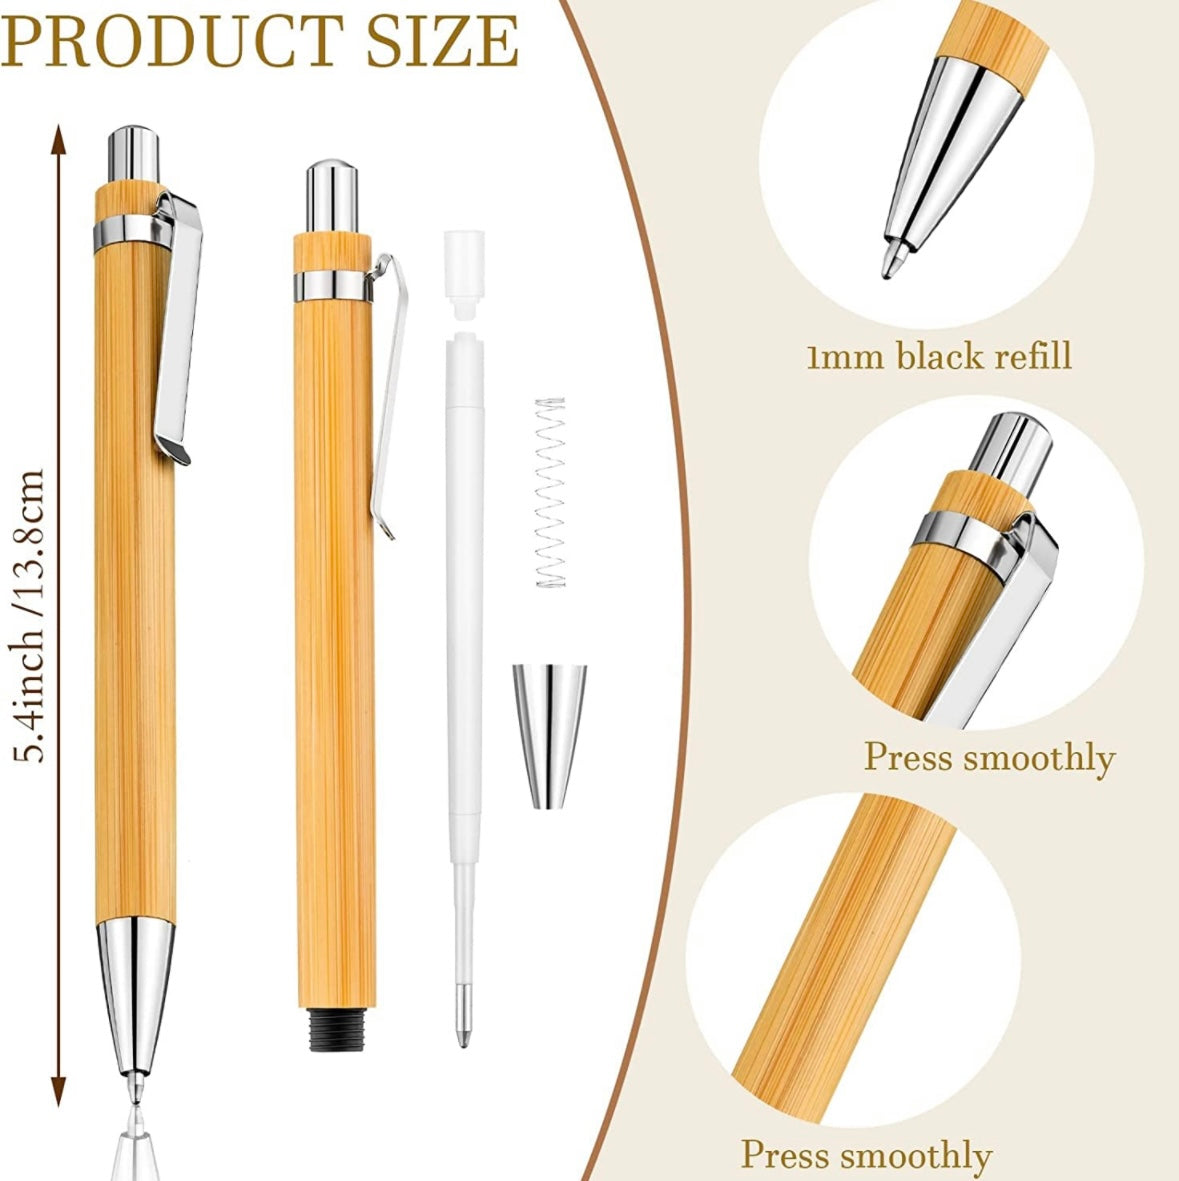 Bamboo pens